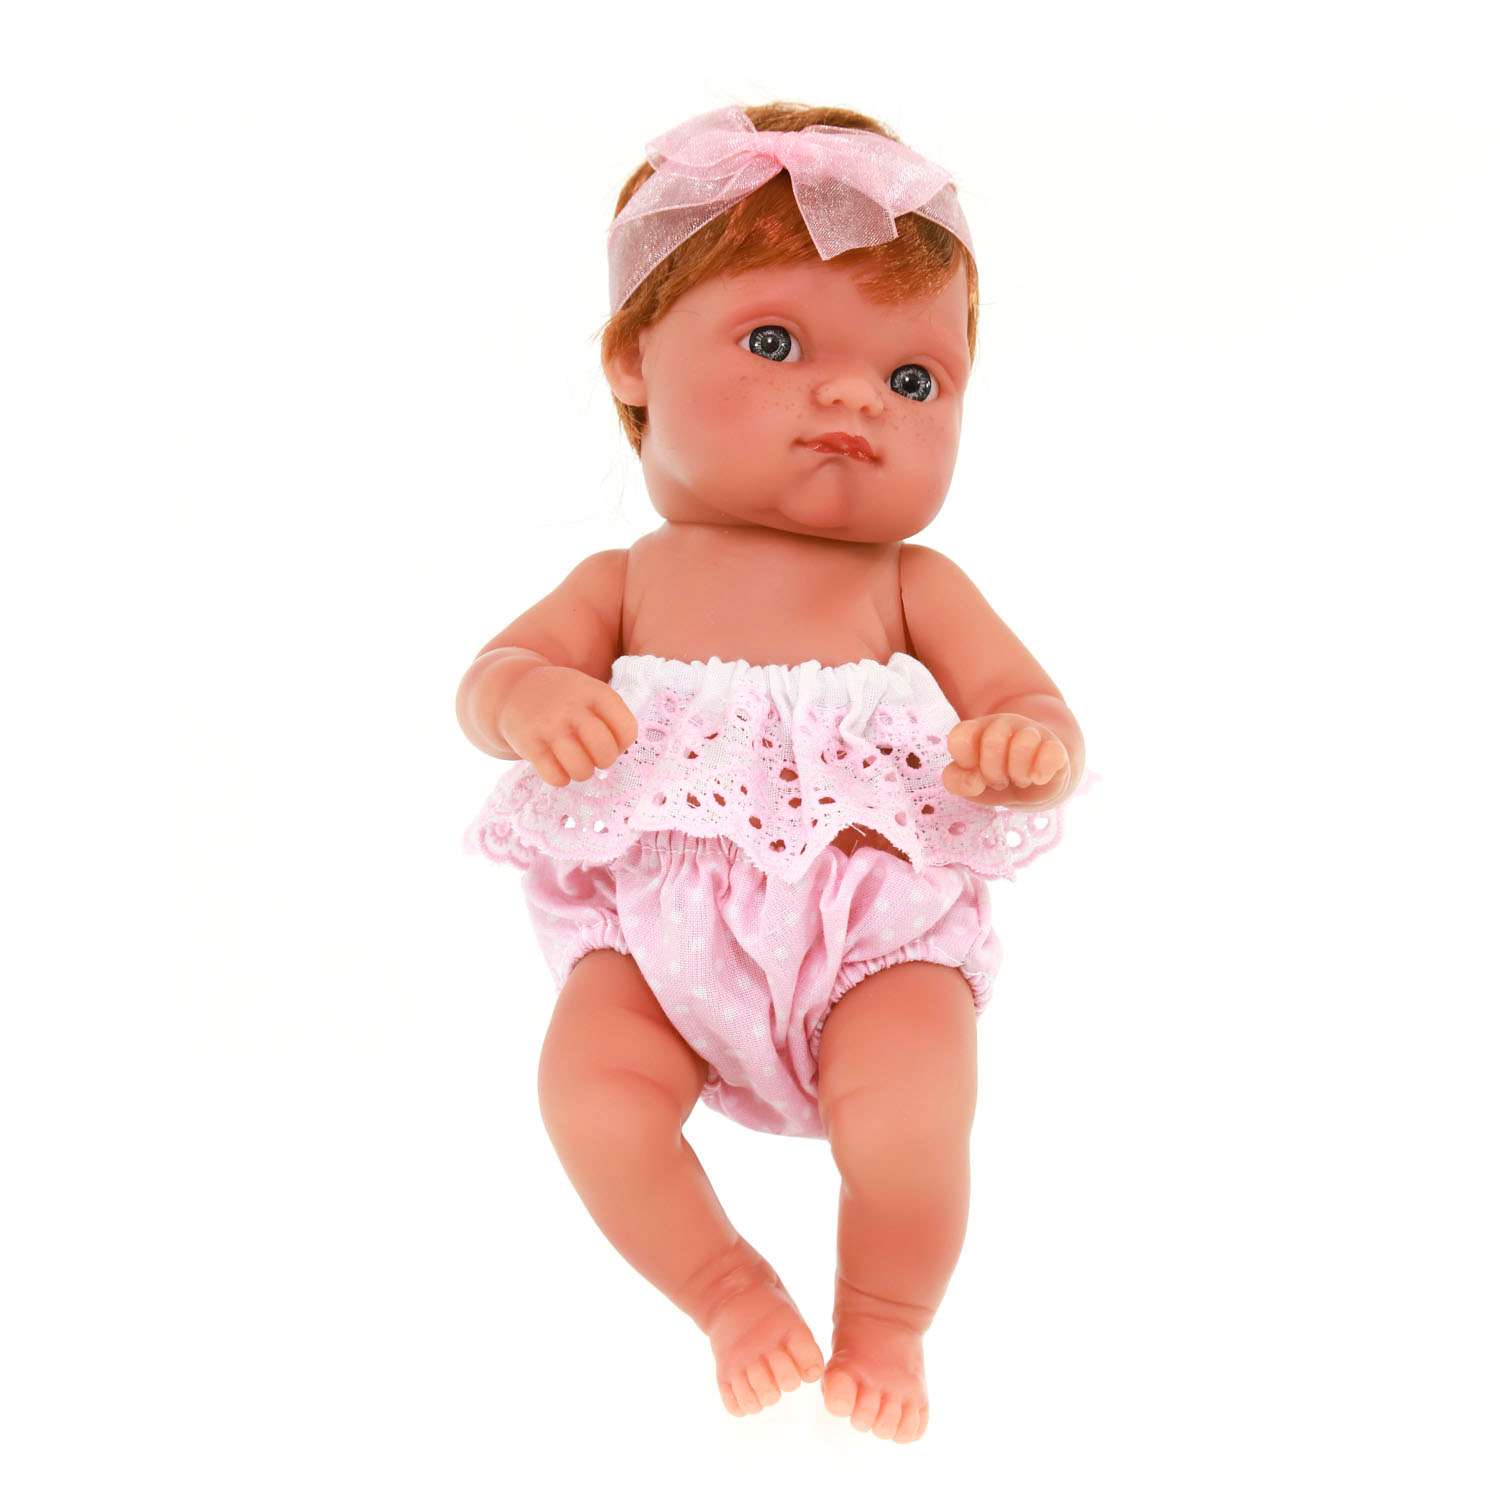 Кукла пупс Antonio Juan Реборн Ариша 21 см виниловая 3997 - фото 1